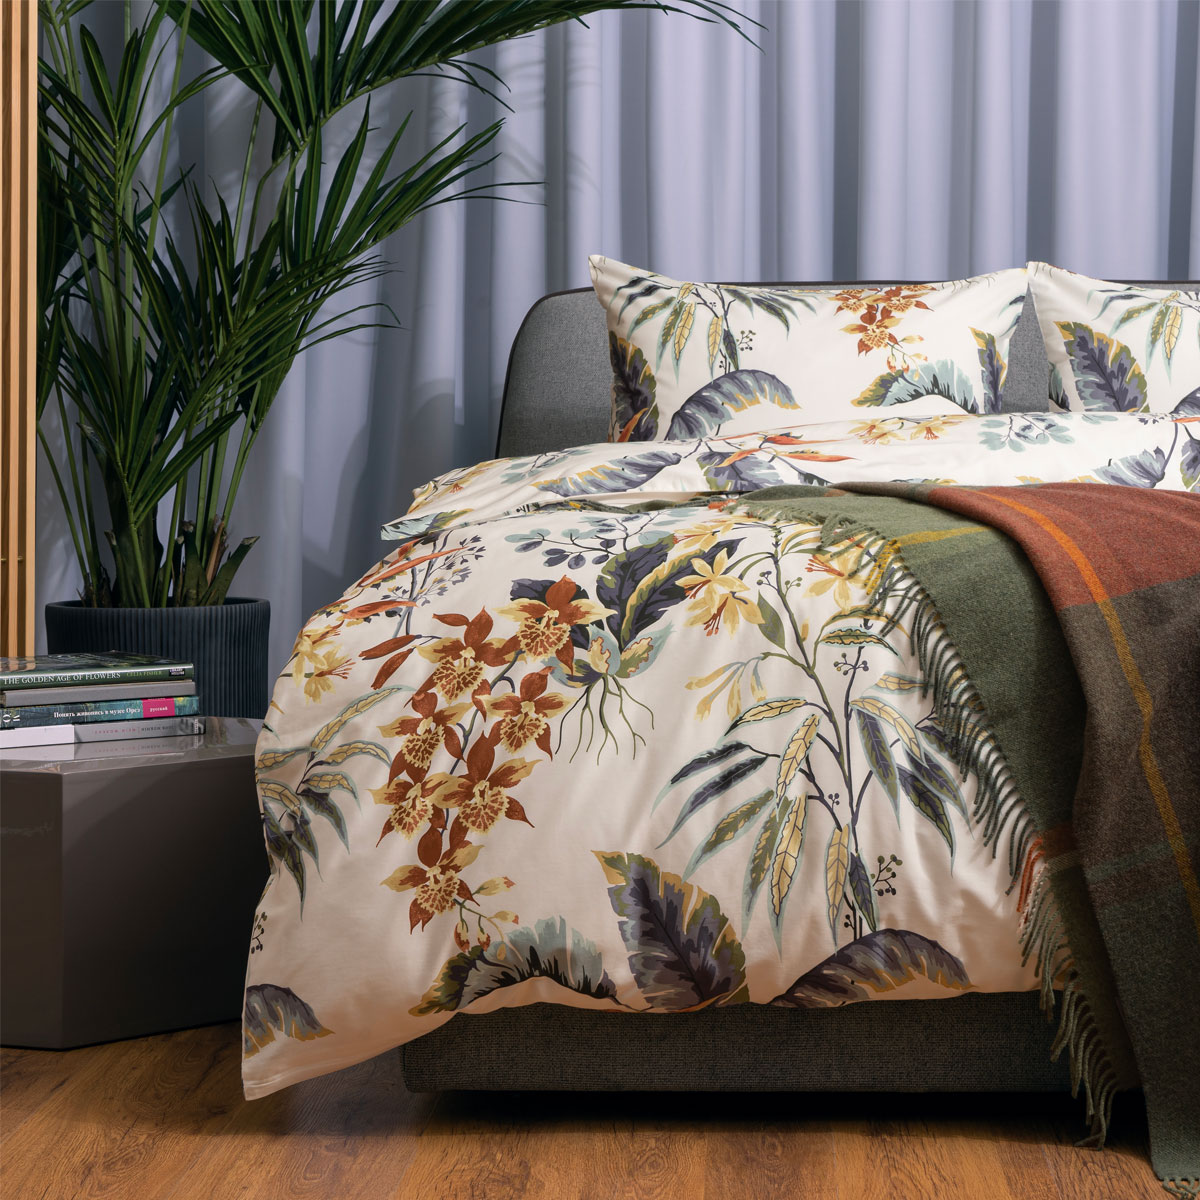 комплект постельного белья 1 5 спальный pappel exotic Комплект постельного белья семейный Pappel exotic